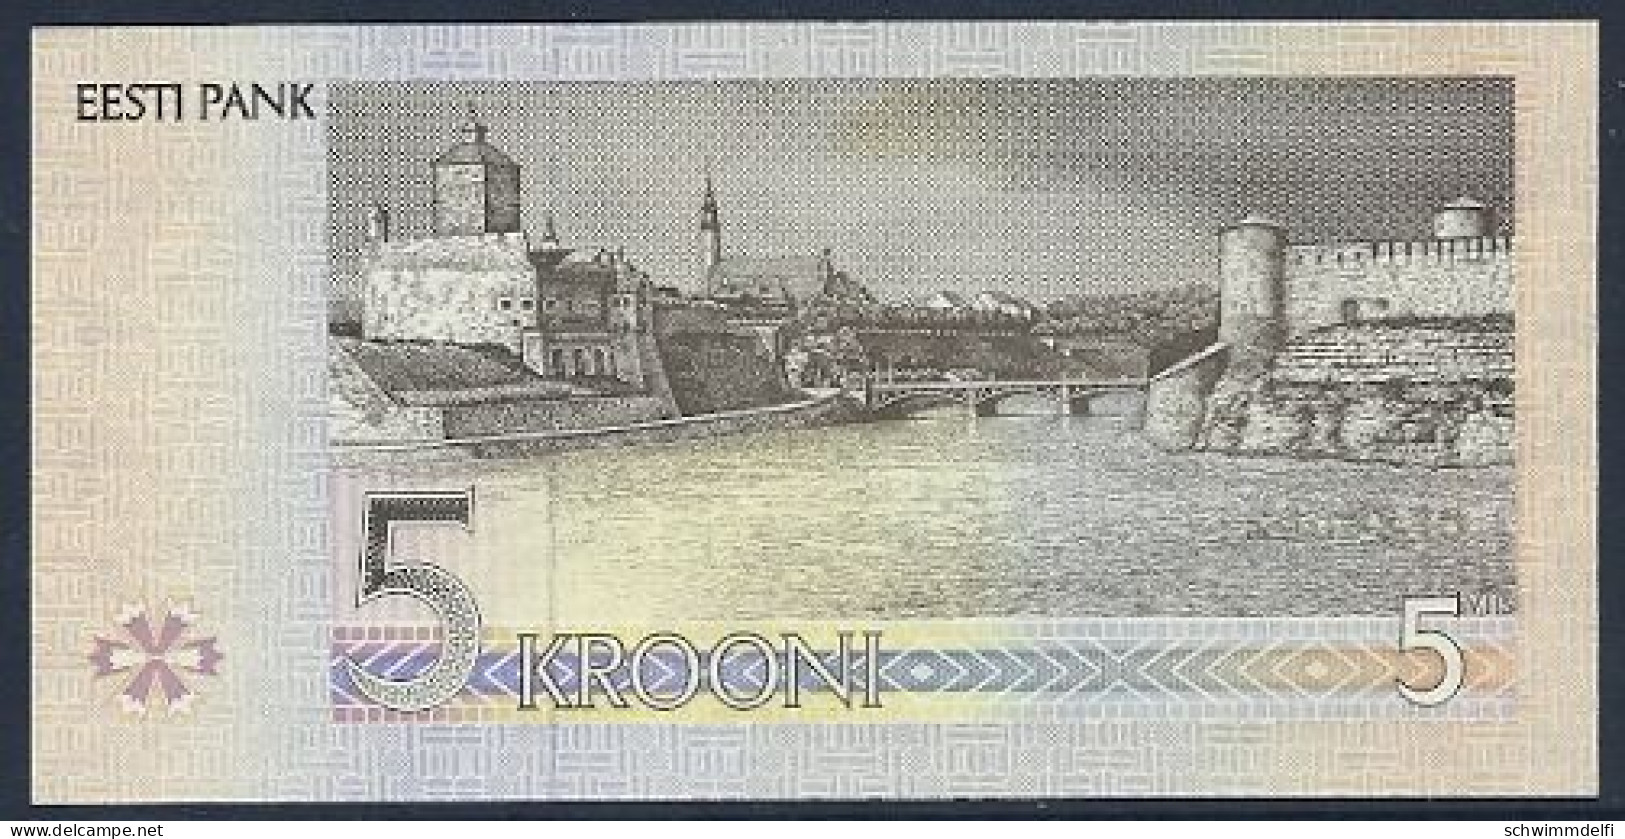 ESTLAND - ESTONIA - 5 KROONI 1994 - SIN CIRCULAR - UNZ. - UNC. - Estonie